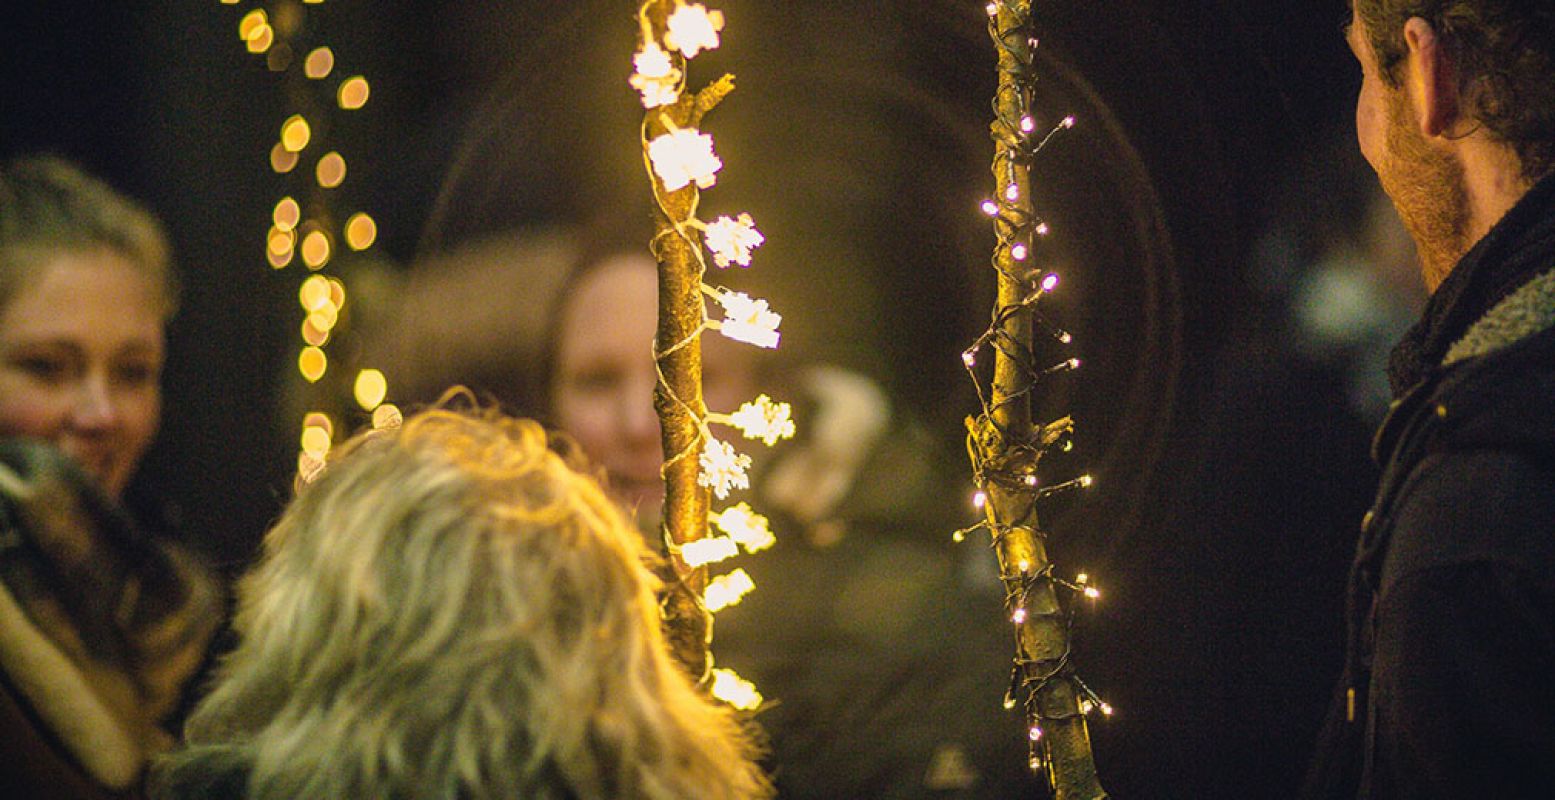 Wandel op 27 december de Lichtjeswandeling in park Het Engelse Werk. Dit is een van de magische activiteiten tijdens Winters Zwolle. Foto: Lichtjeswandeling Zwolle.